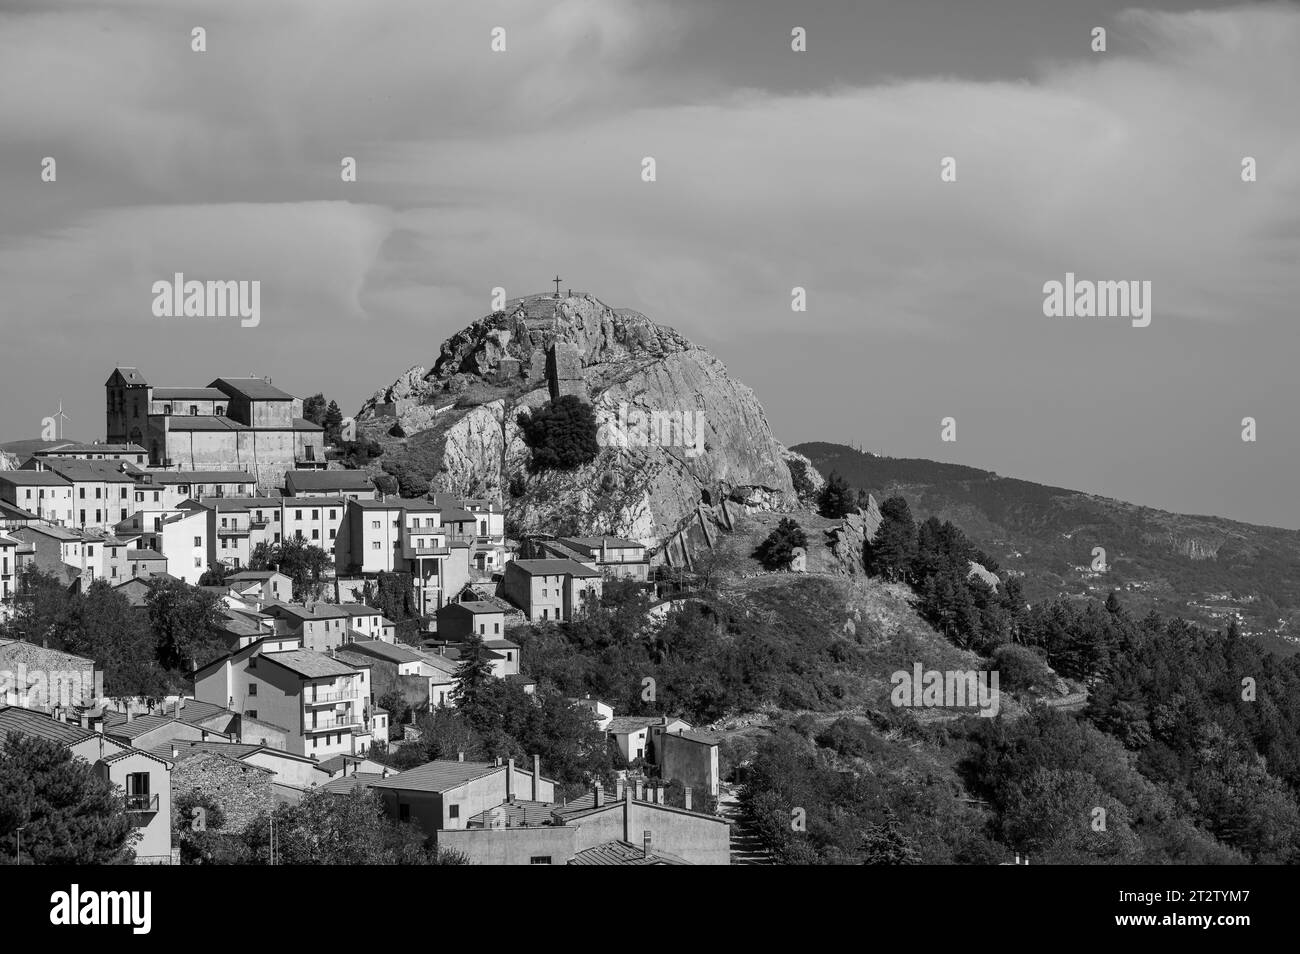 Es ist eine italienische Stadt mit 732 Einwohnern in der Provinz Isernia in Molise, berühmt für das Samnitische Heiligtum. Stockfoto